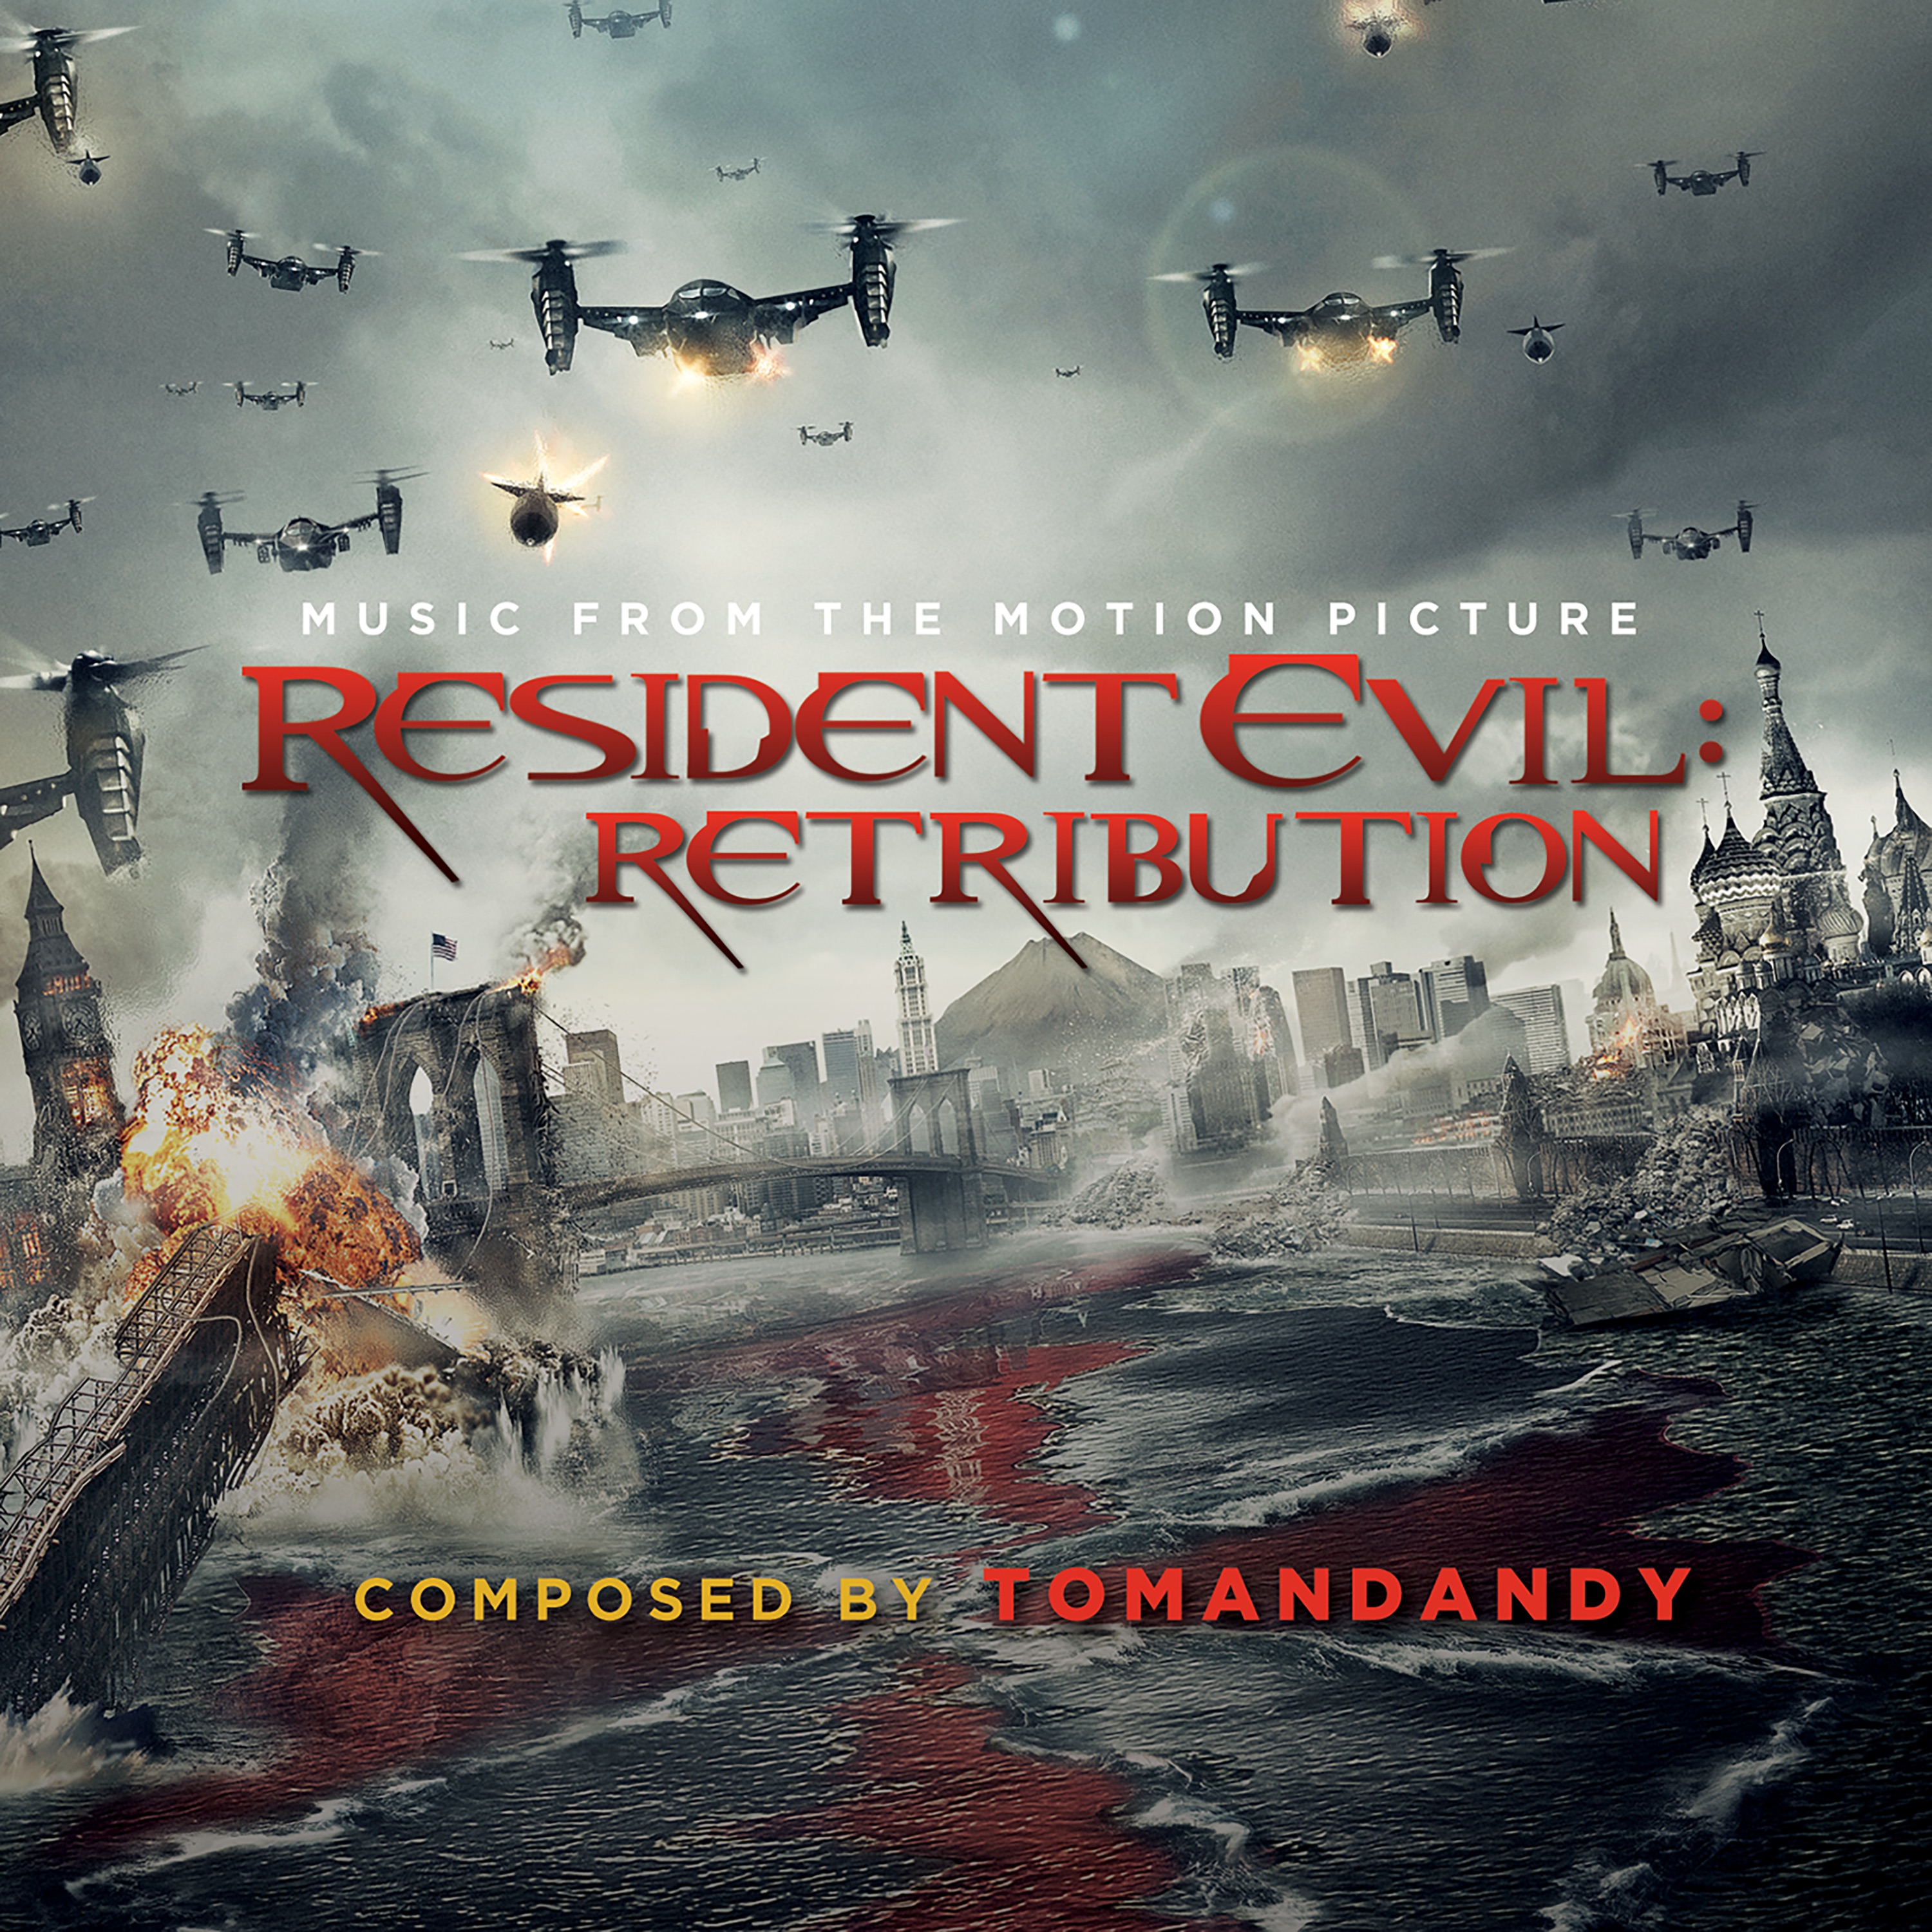 Resident evil саундтреки. Обитель зла. Возмездие Resident Evil. Retribution (2012). Обитель зла 5 Возмездие 2012. Резидент эвил Ретрибутион. Resident Evil: Retribution - OST.